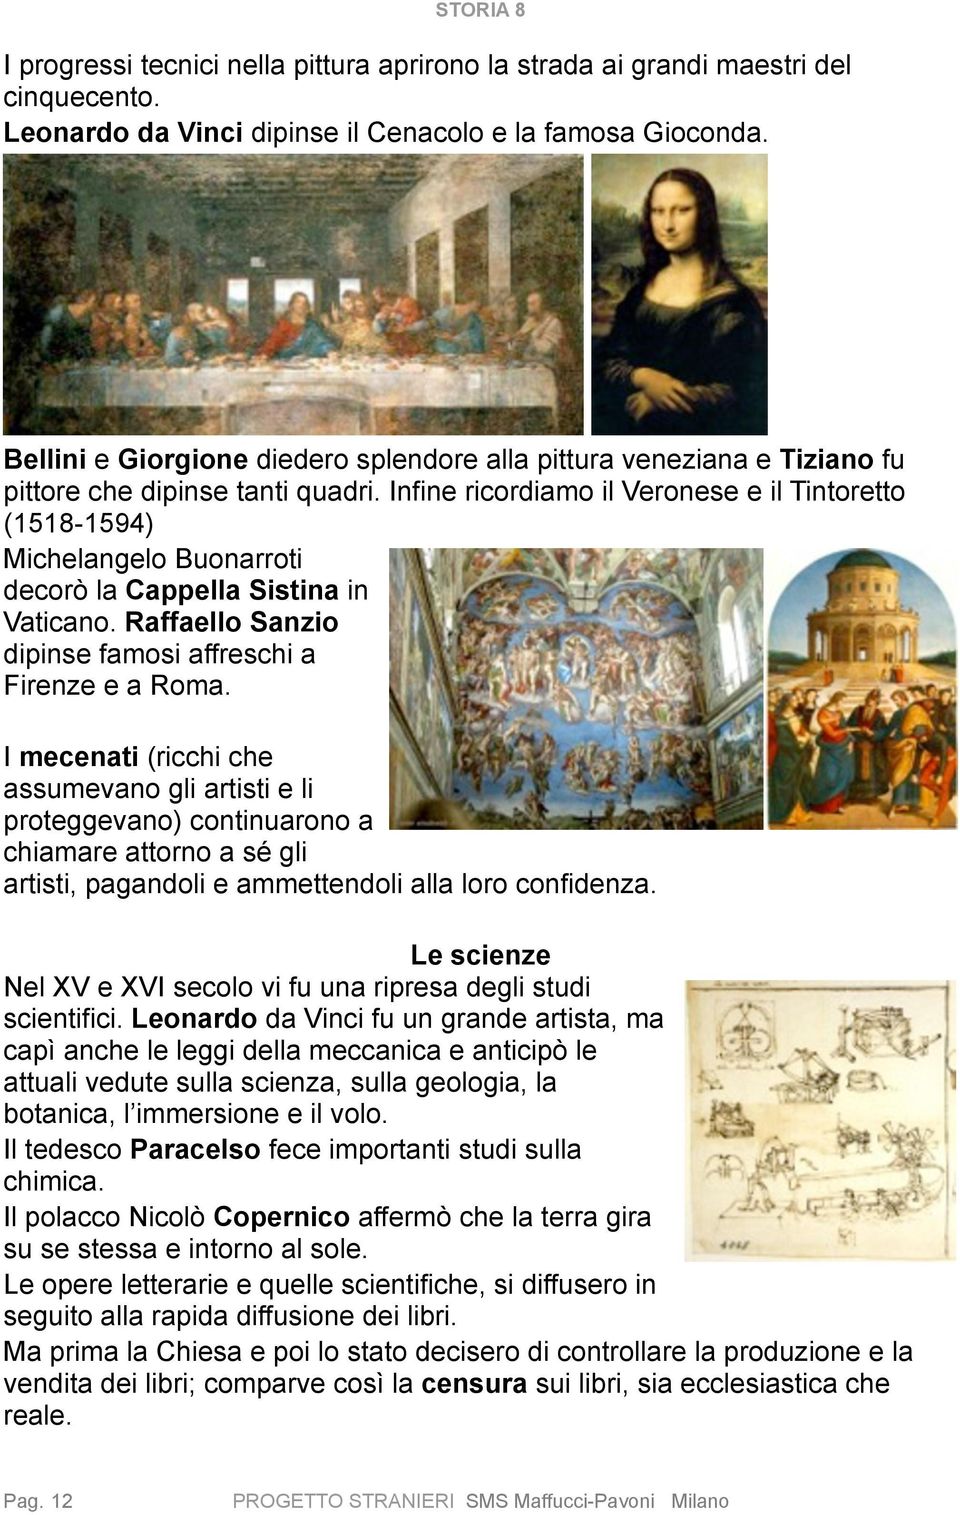 Infine ricordiamo il Veronese e il Tintoretto (1518-1594) Michelangelo Buonarroti decorò la Cappella Sistina in Vaticano. Raffaello Sanzio dipinse famosi affreschi a Firenze e a Roma.